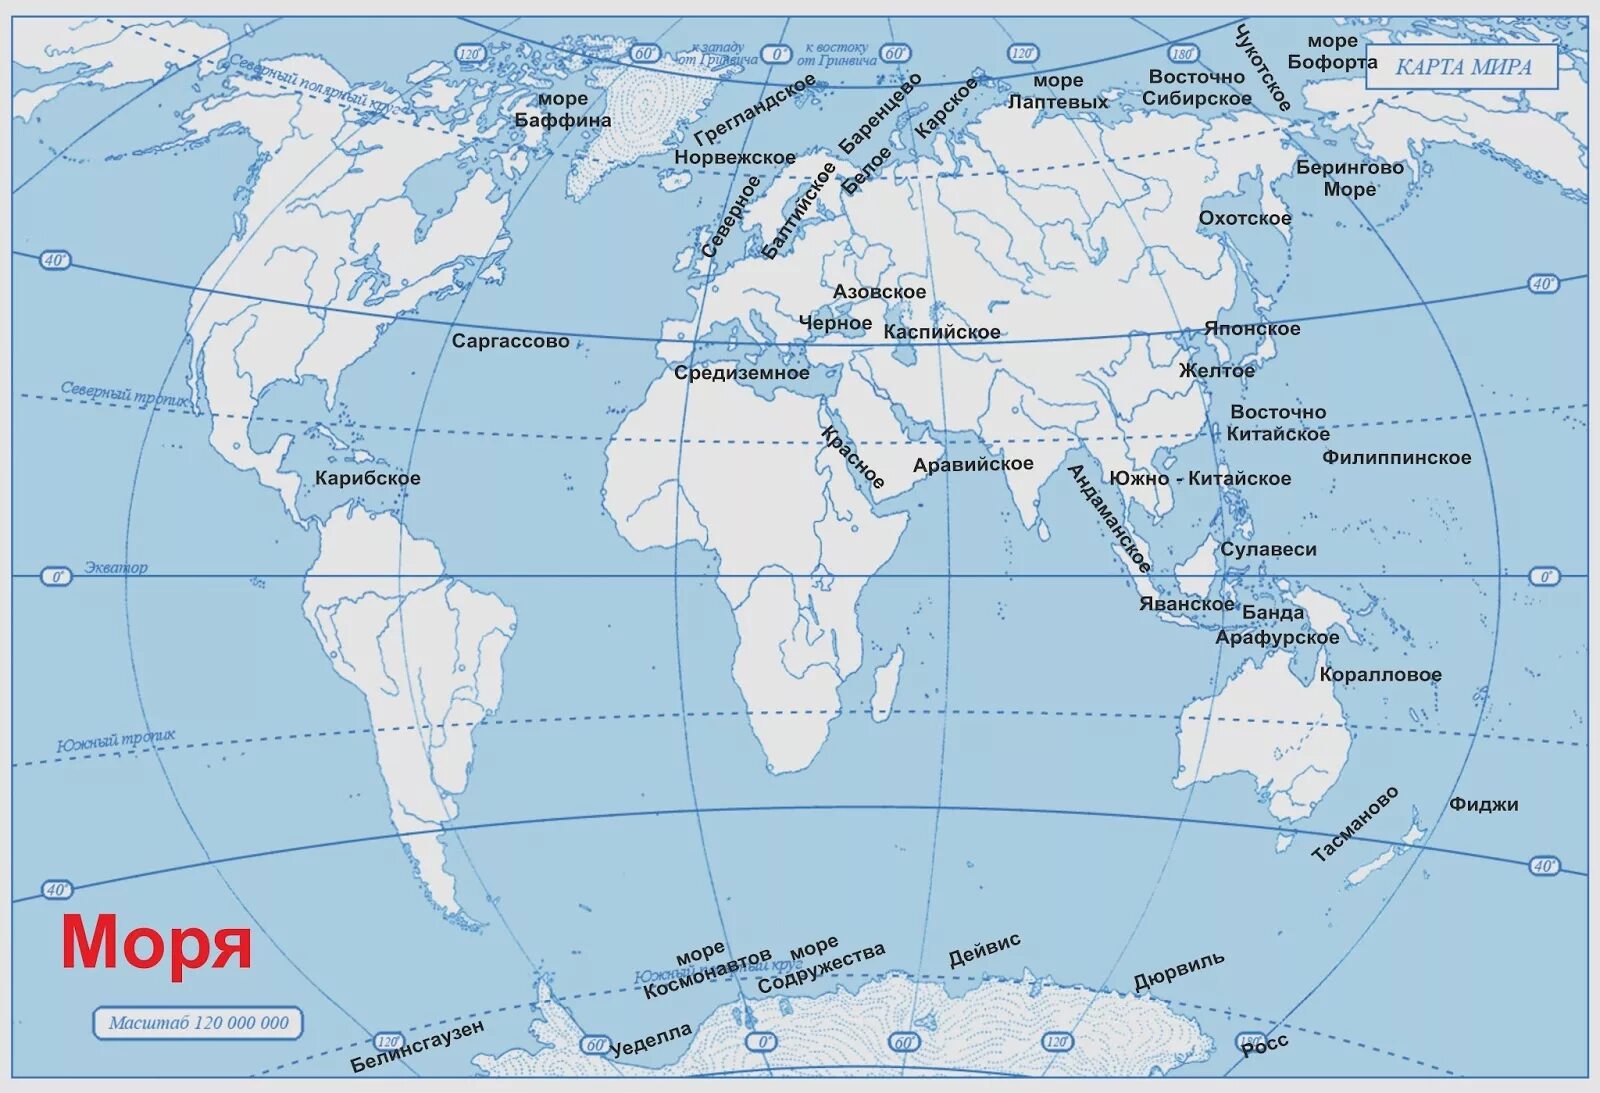 Моря океаны заливы проливы на карте. Какой из указанных полуостровов самый южный